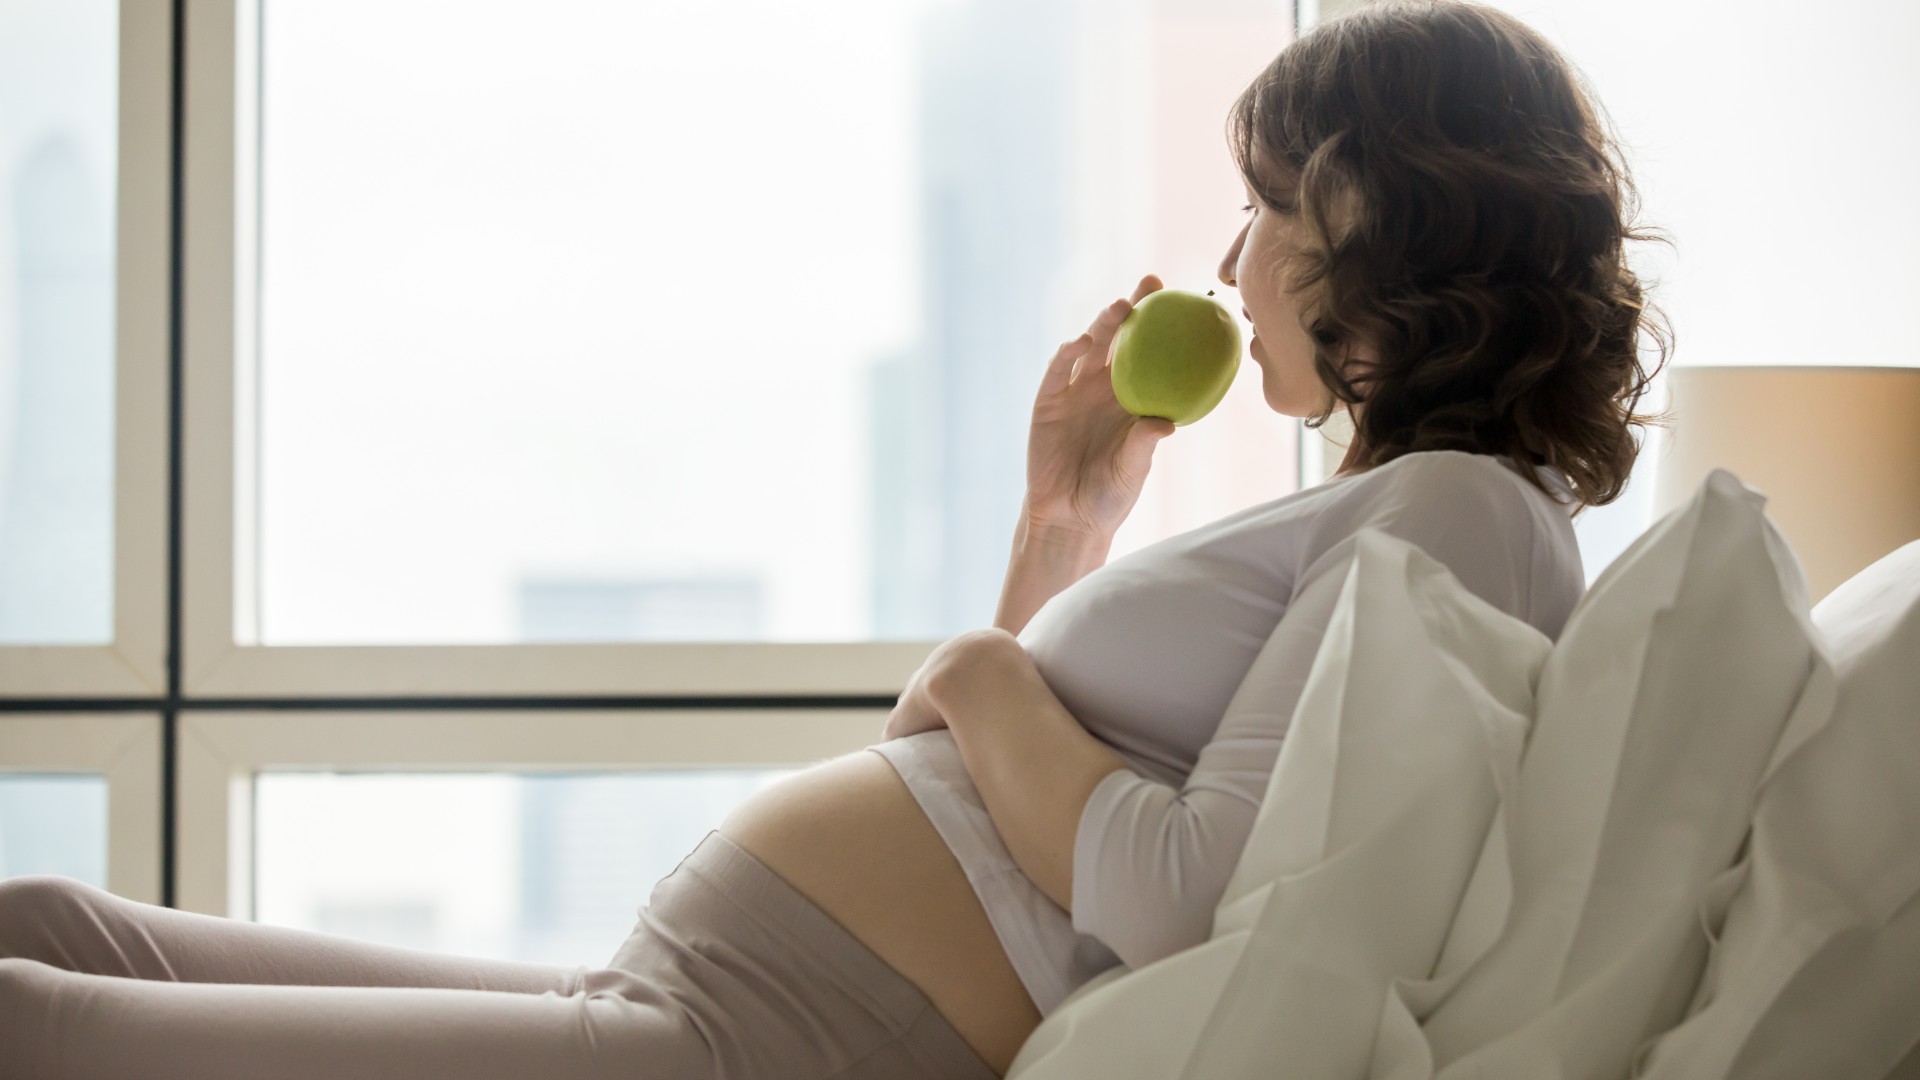 Foto de capa do artigo "O que grávida não pode comer? Veja o que evitar"